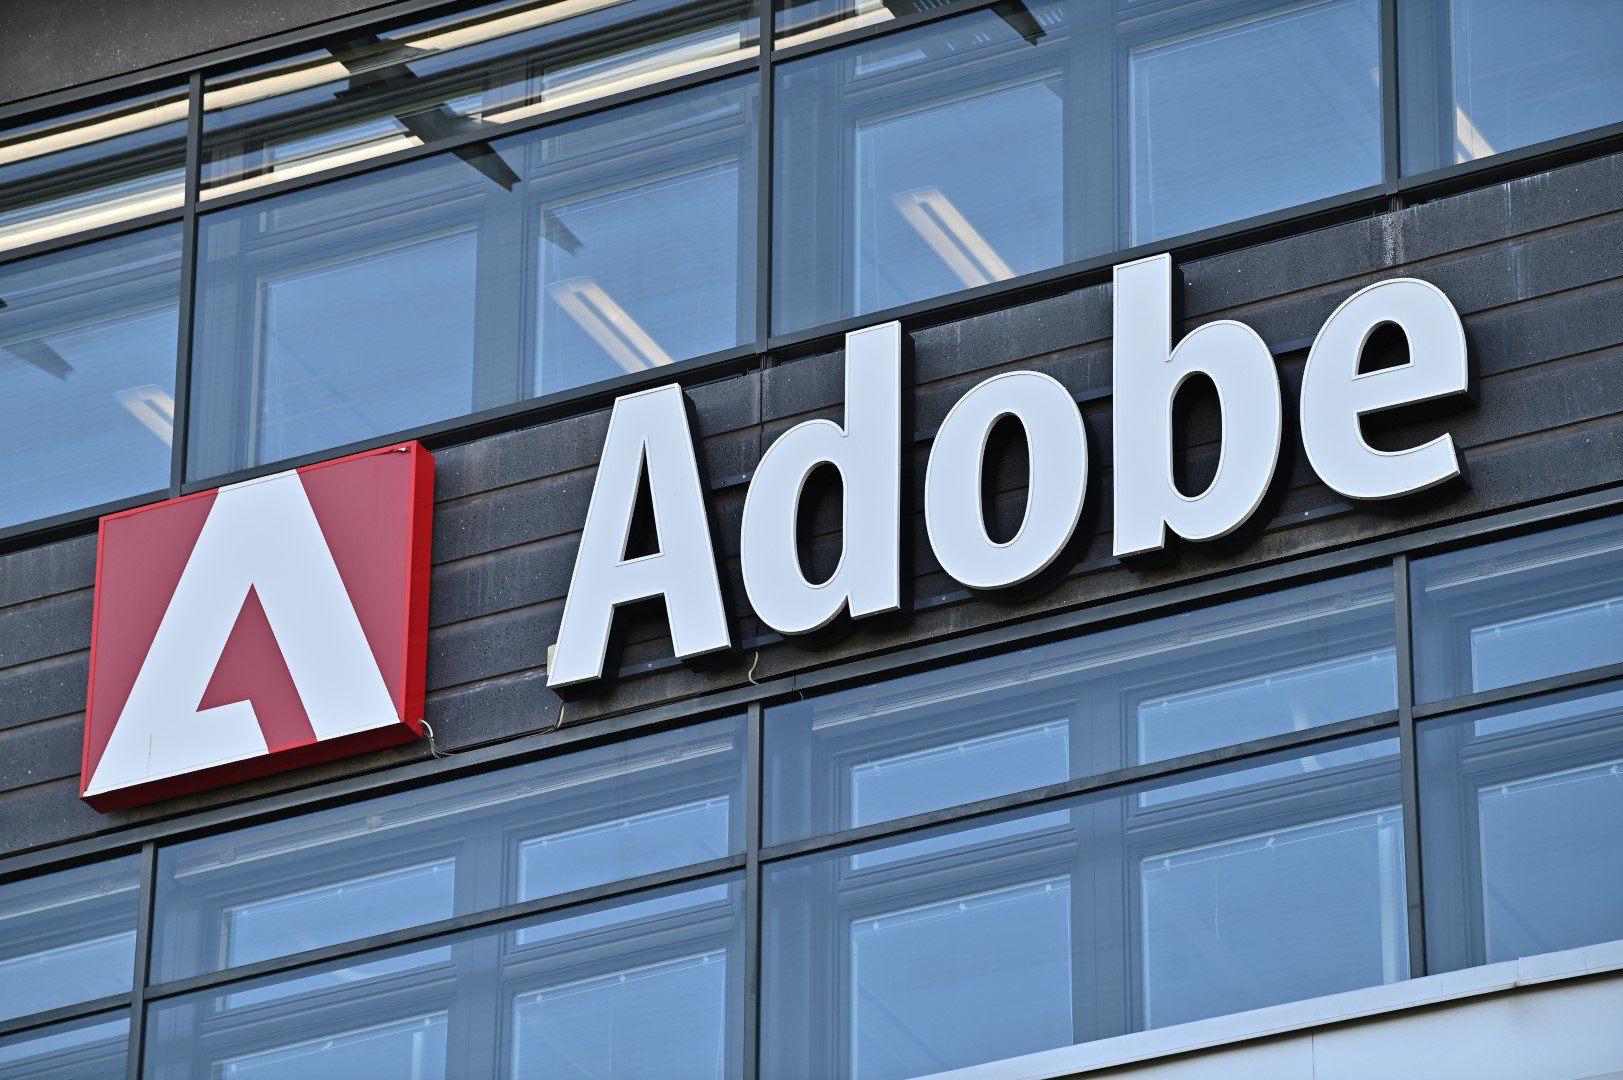 Adobe Spectrum 2 offre: un sistema di progettazione completo e accessibile